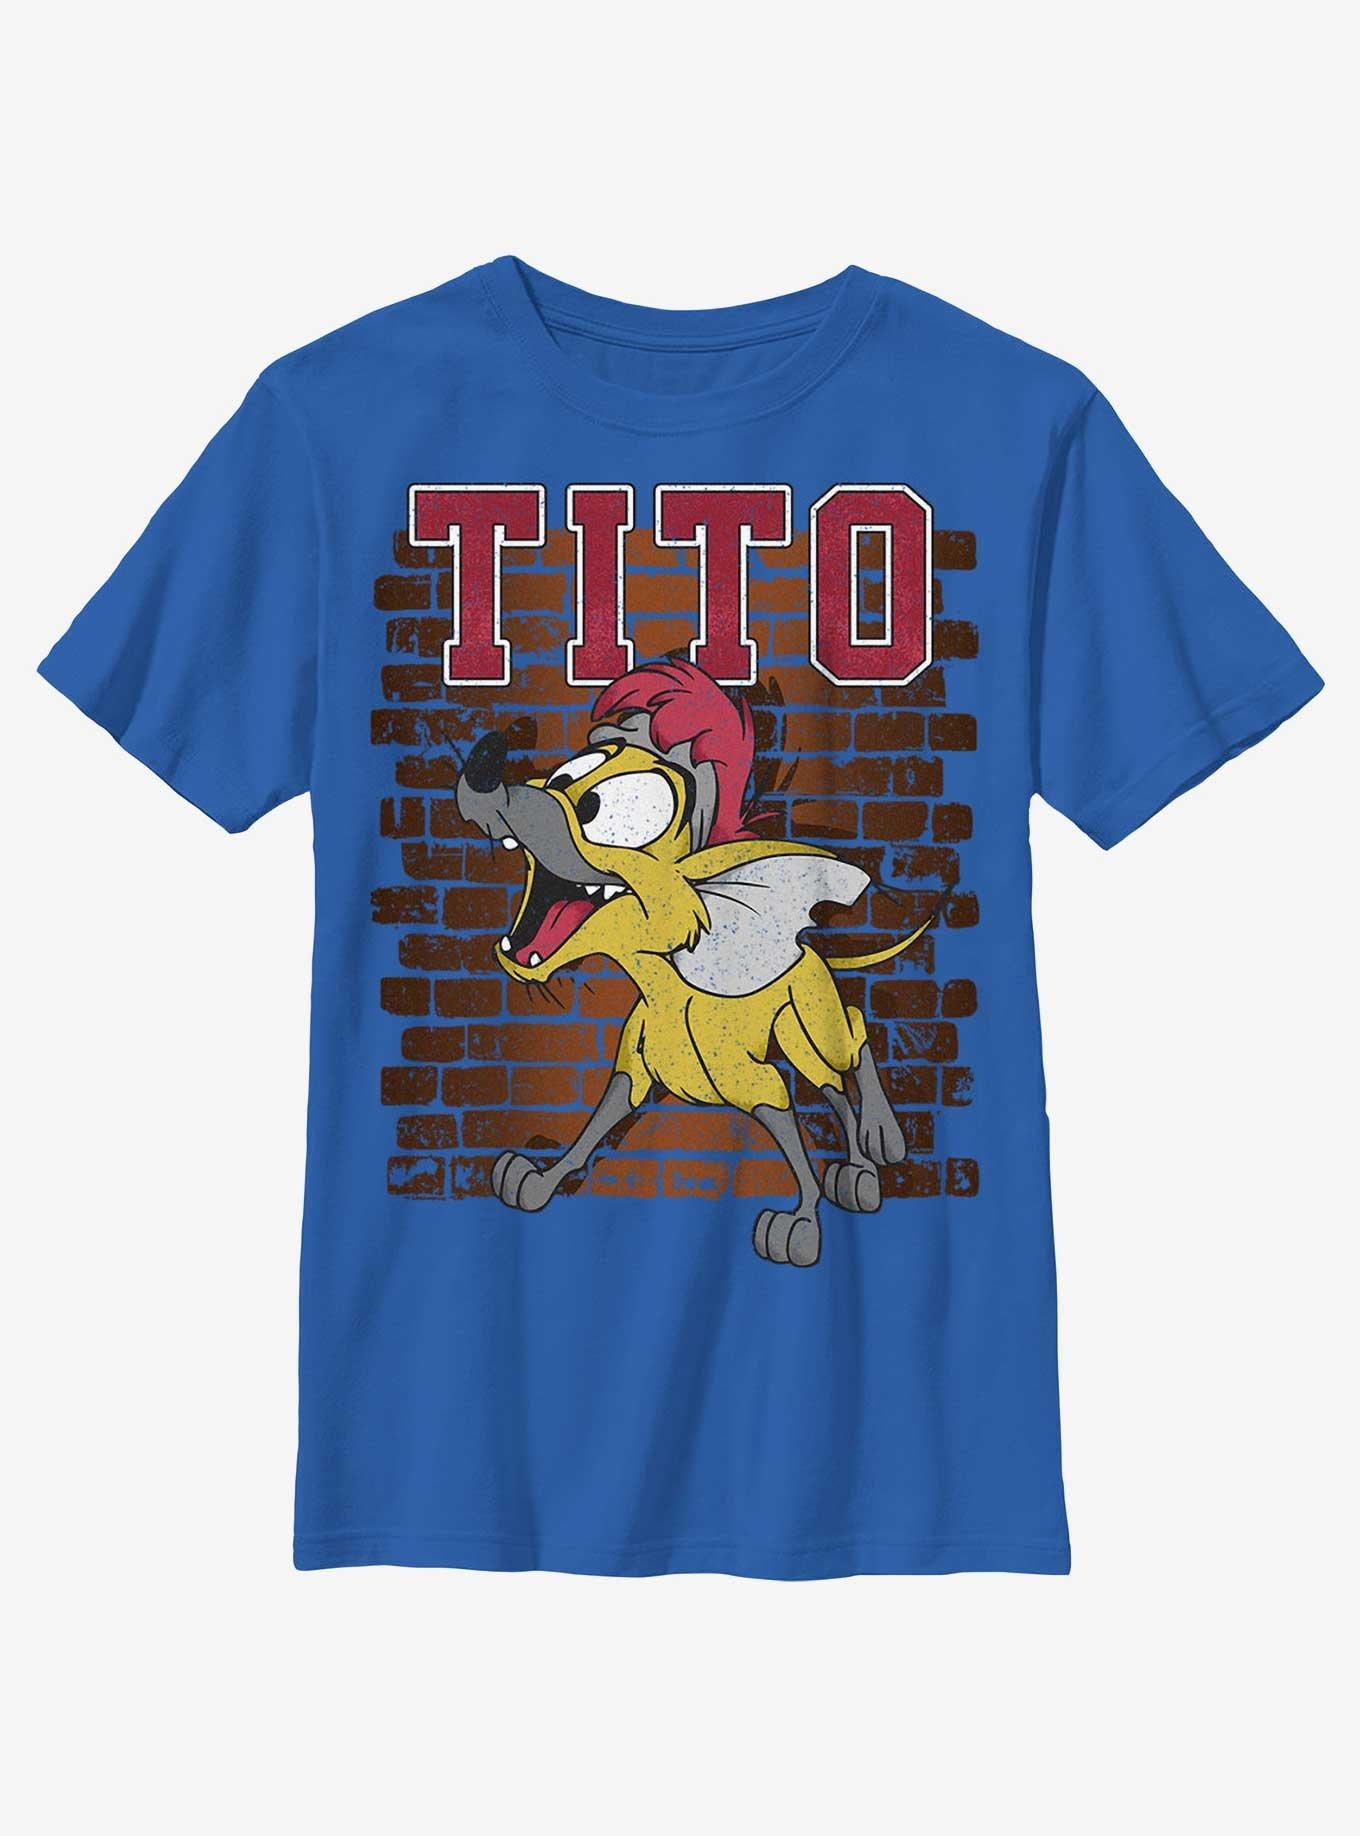 Disney Oliver & Company Tito Youth T-Shirt, ROYAL, hi-res